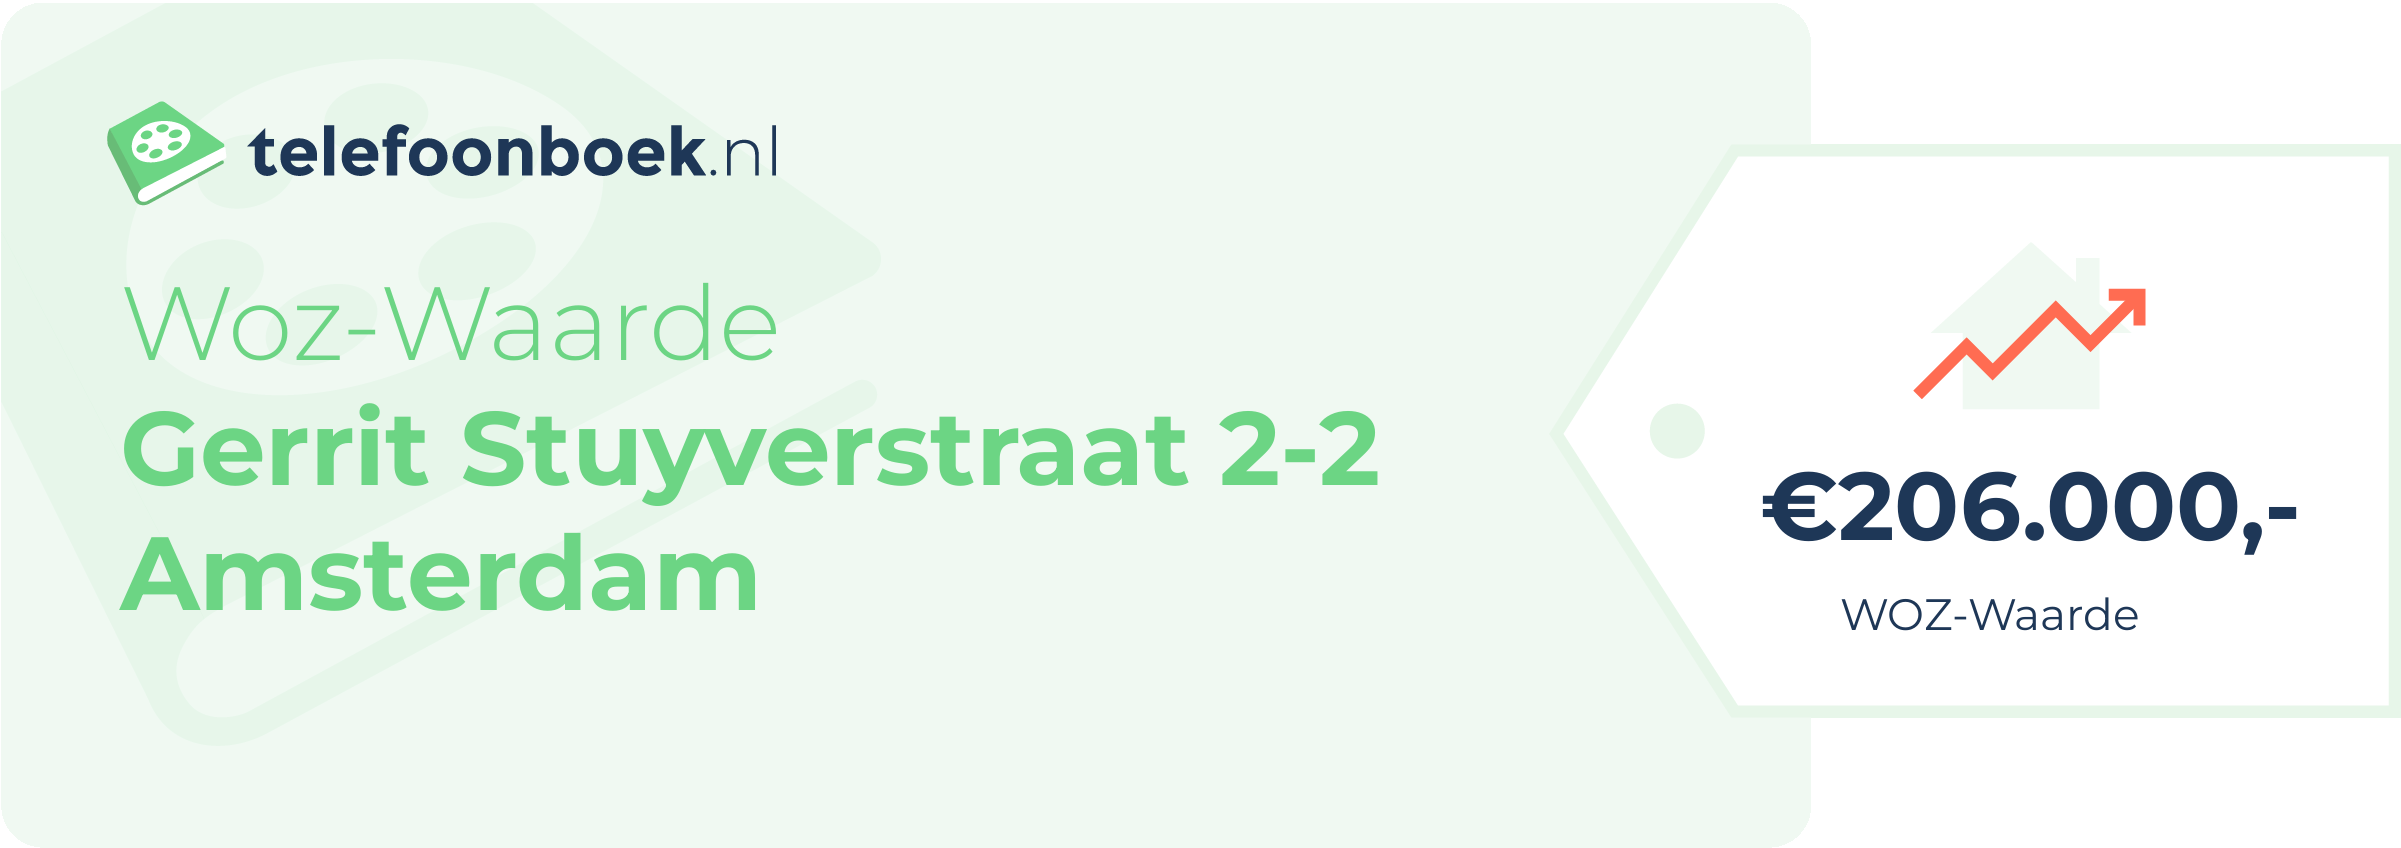 WOZ-waarde Gerrit Stuyverstraat 2-2 Amsterdam